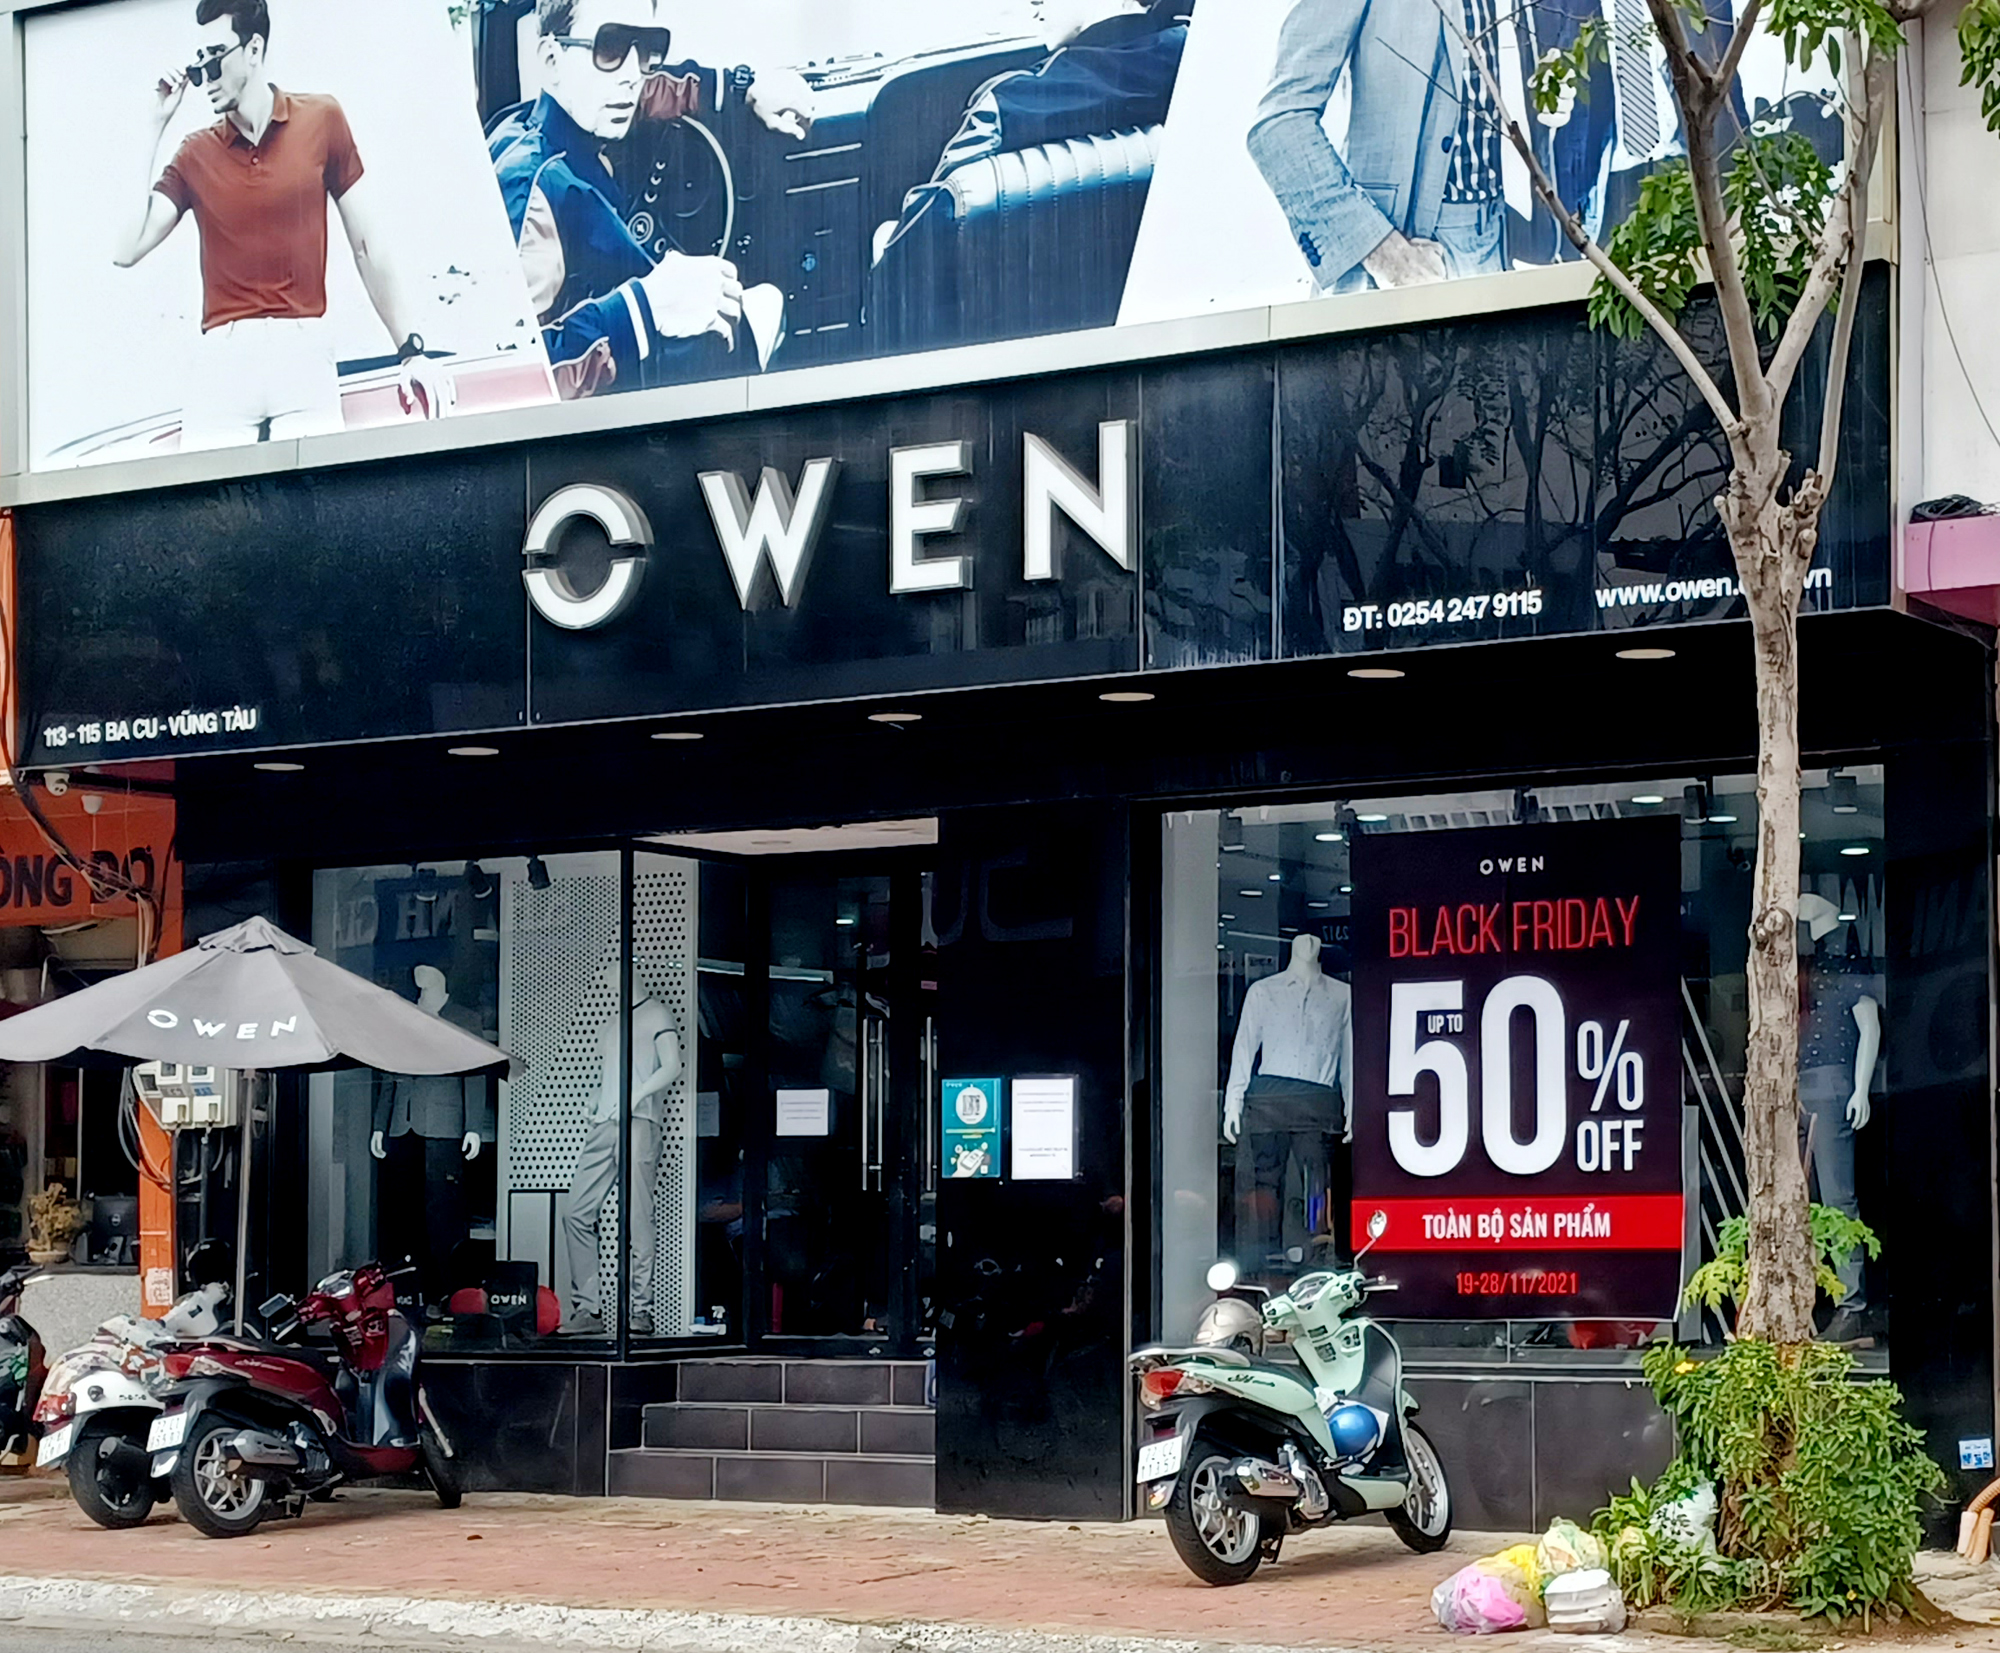 Cửa hàng thời trang Owen trên đường Bacu, TP. Vũng Tàu vắng khách trong ngày thứ sáu đen tối - Black Friday 26/11.